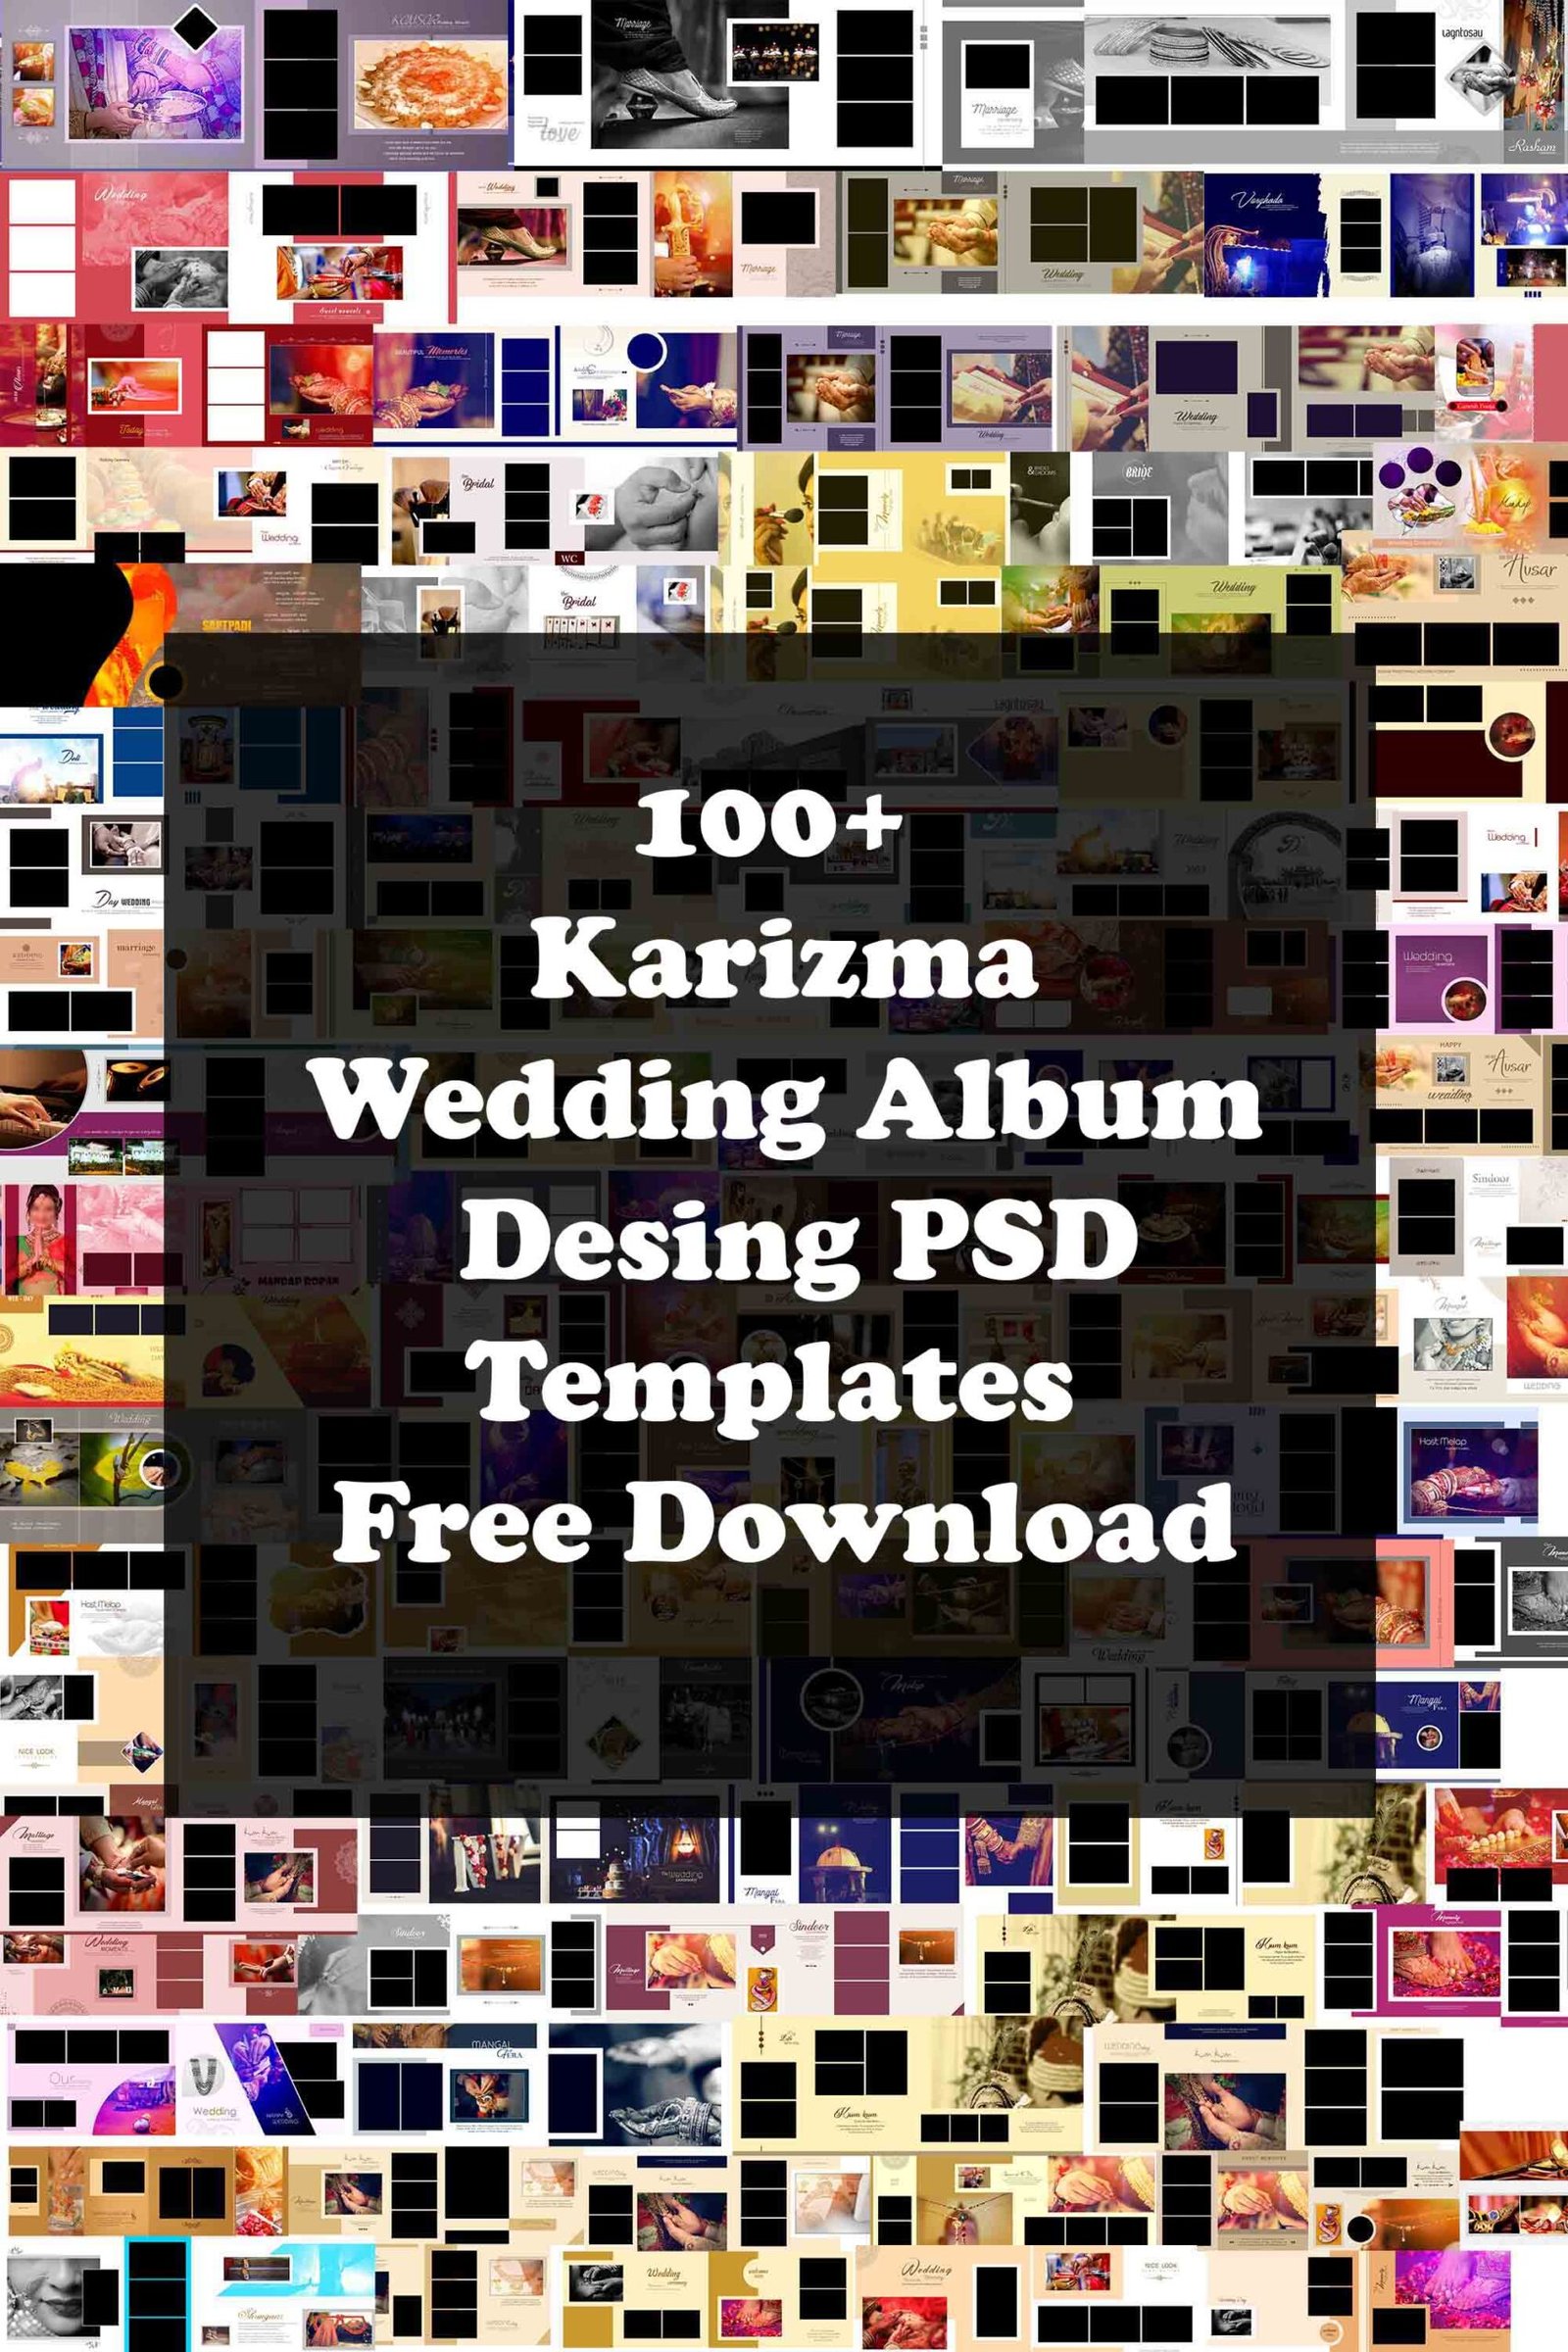 Bộ sưu tập mẫu Karizma Album PSD cưới 1200+ miễn phí là một trang khổng lồ các hình ảnh đẹp, phong phú và chất lượng. Hãy truy cập ngay để khám phá hàng nghìn mẫu Karizma Album PSD cưới miễn phí đẹp nhất, tối ưu cho mọi thiết kế của bạn. Đây sẽ là một nguồn tài nguyên tiện ích cho các bạn yêu thích nghệ thuật và muốn tạo ra một sản phẩm độc đáo cho riêng mình!